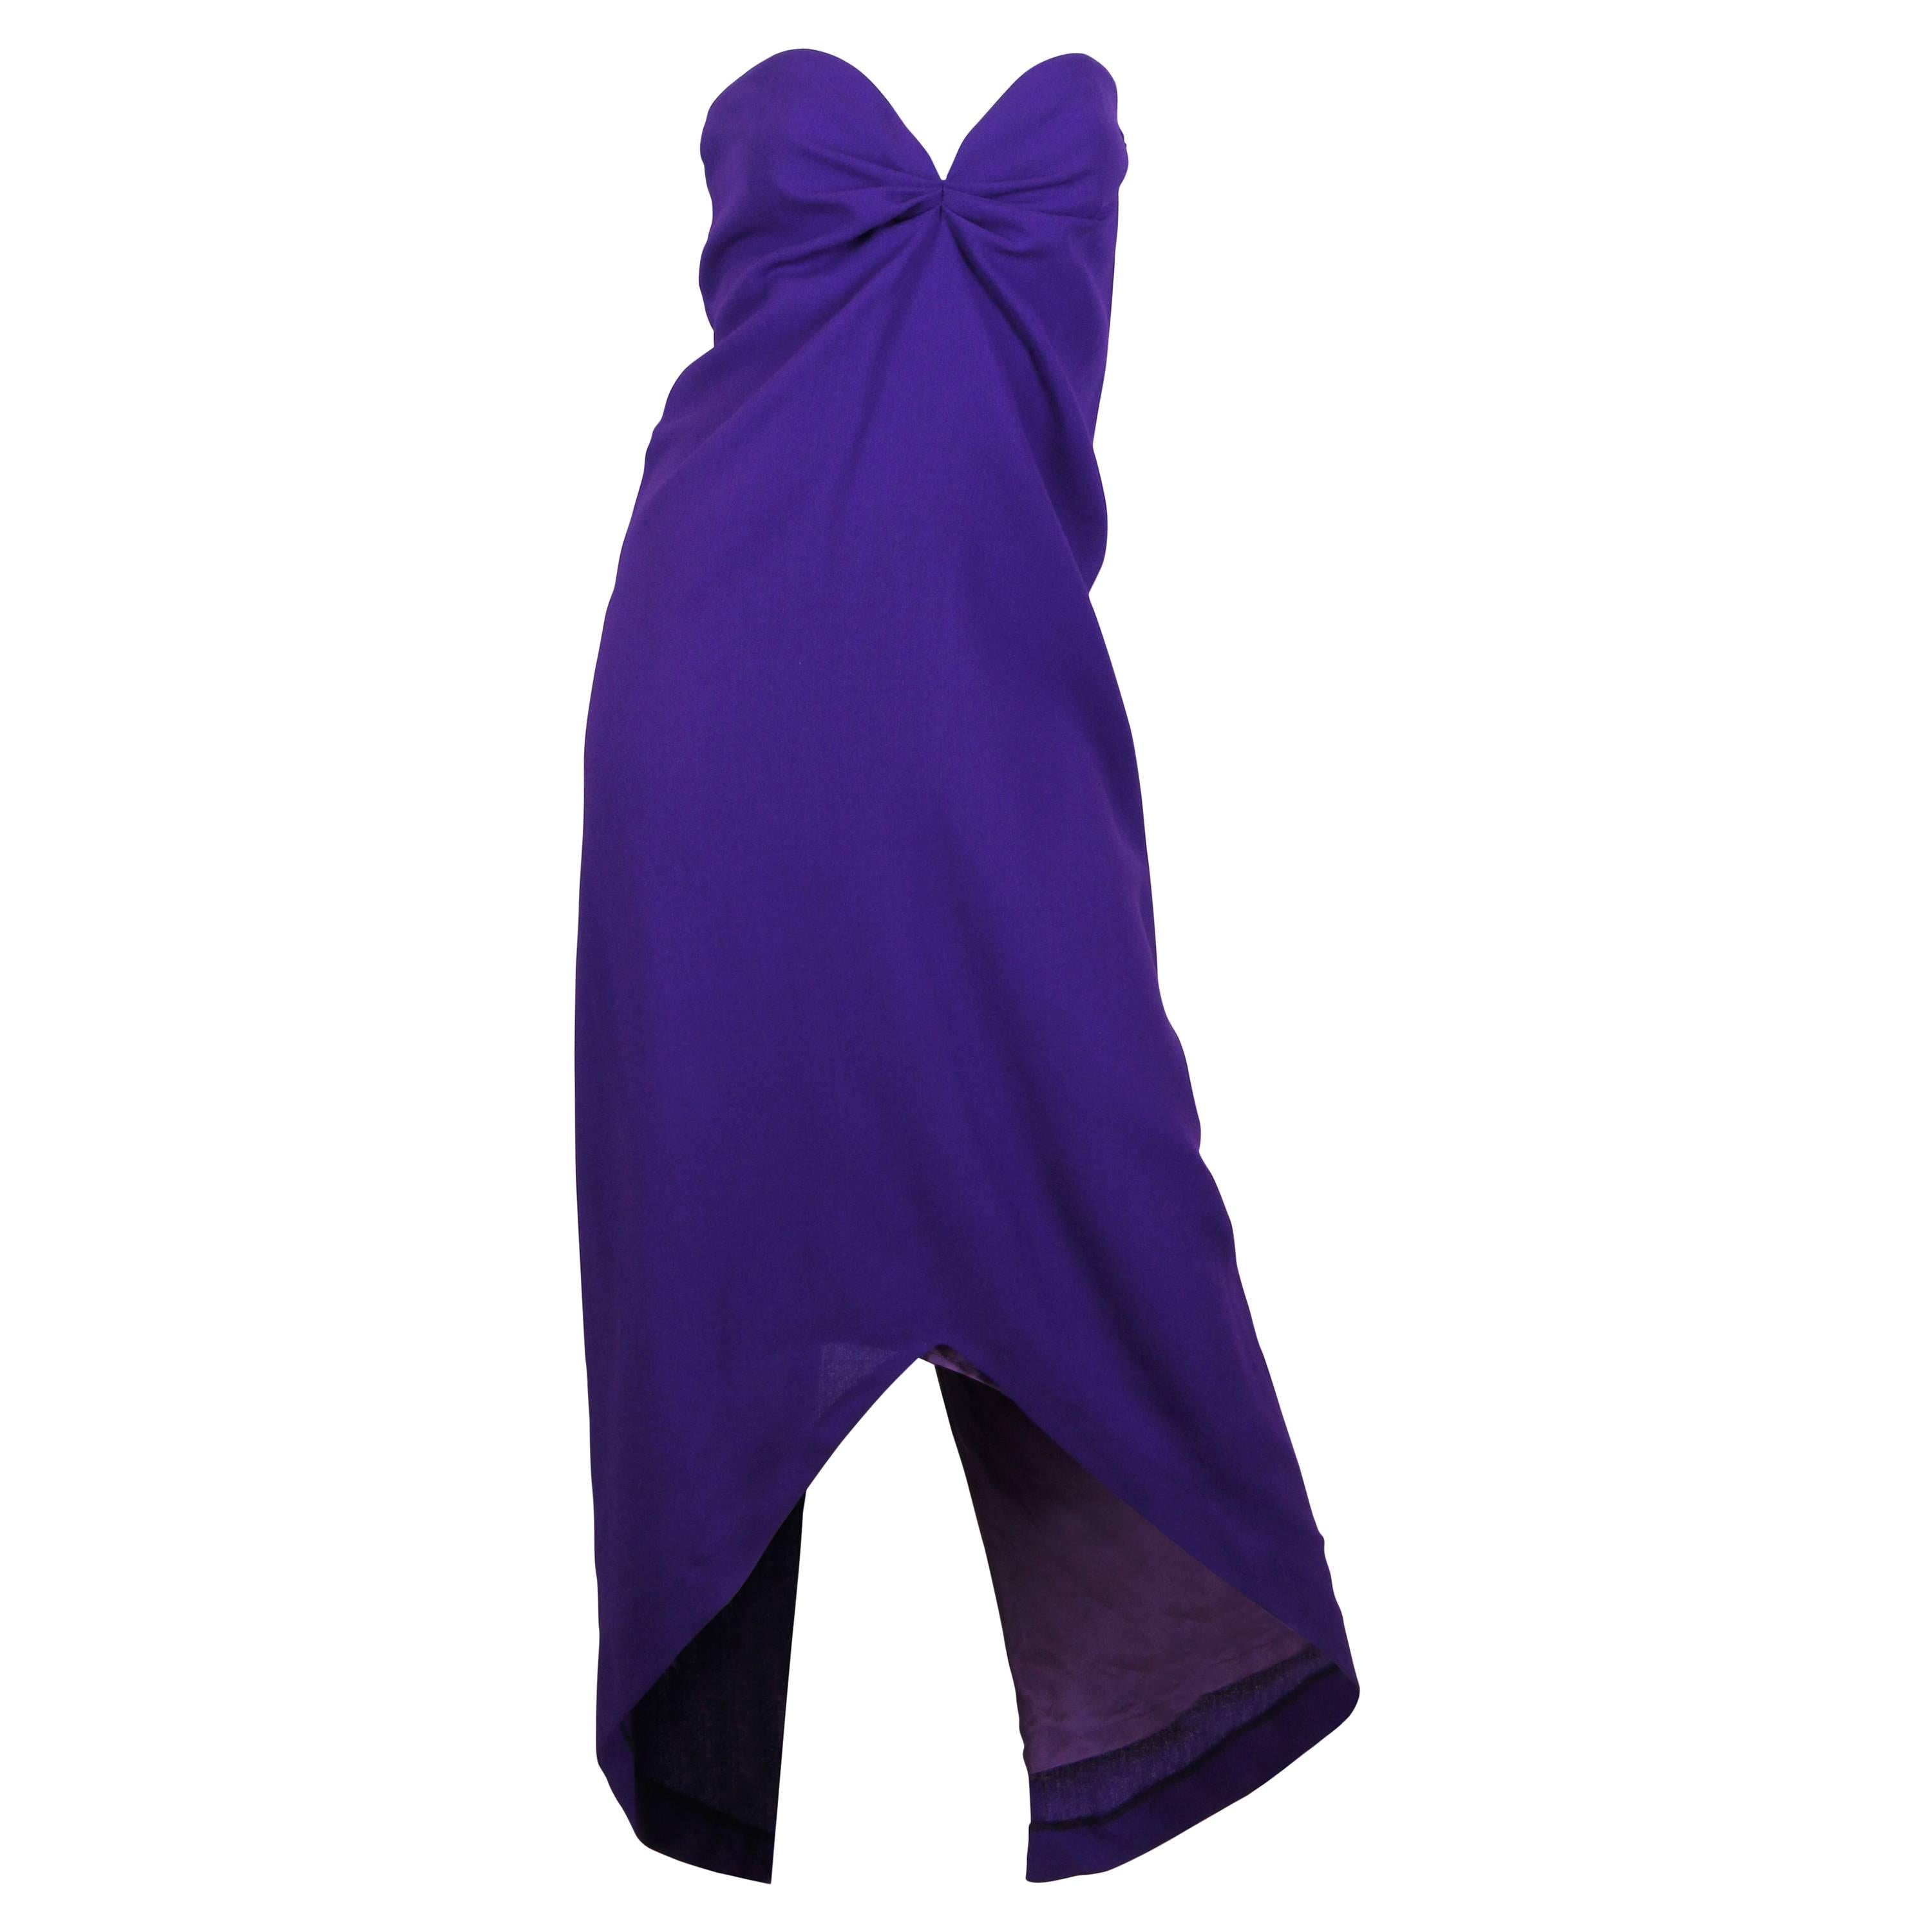 Yves Saint Laurent YSL Strapless Dress